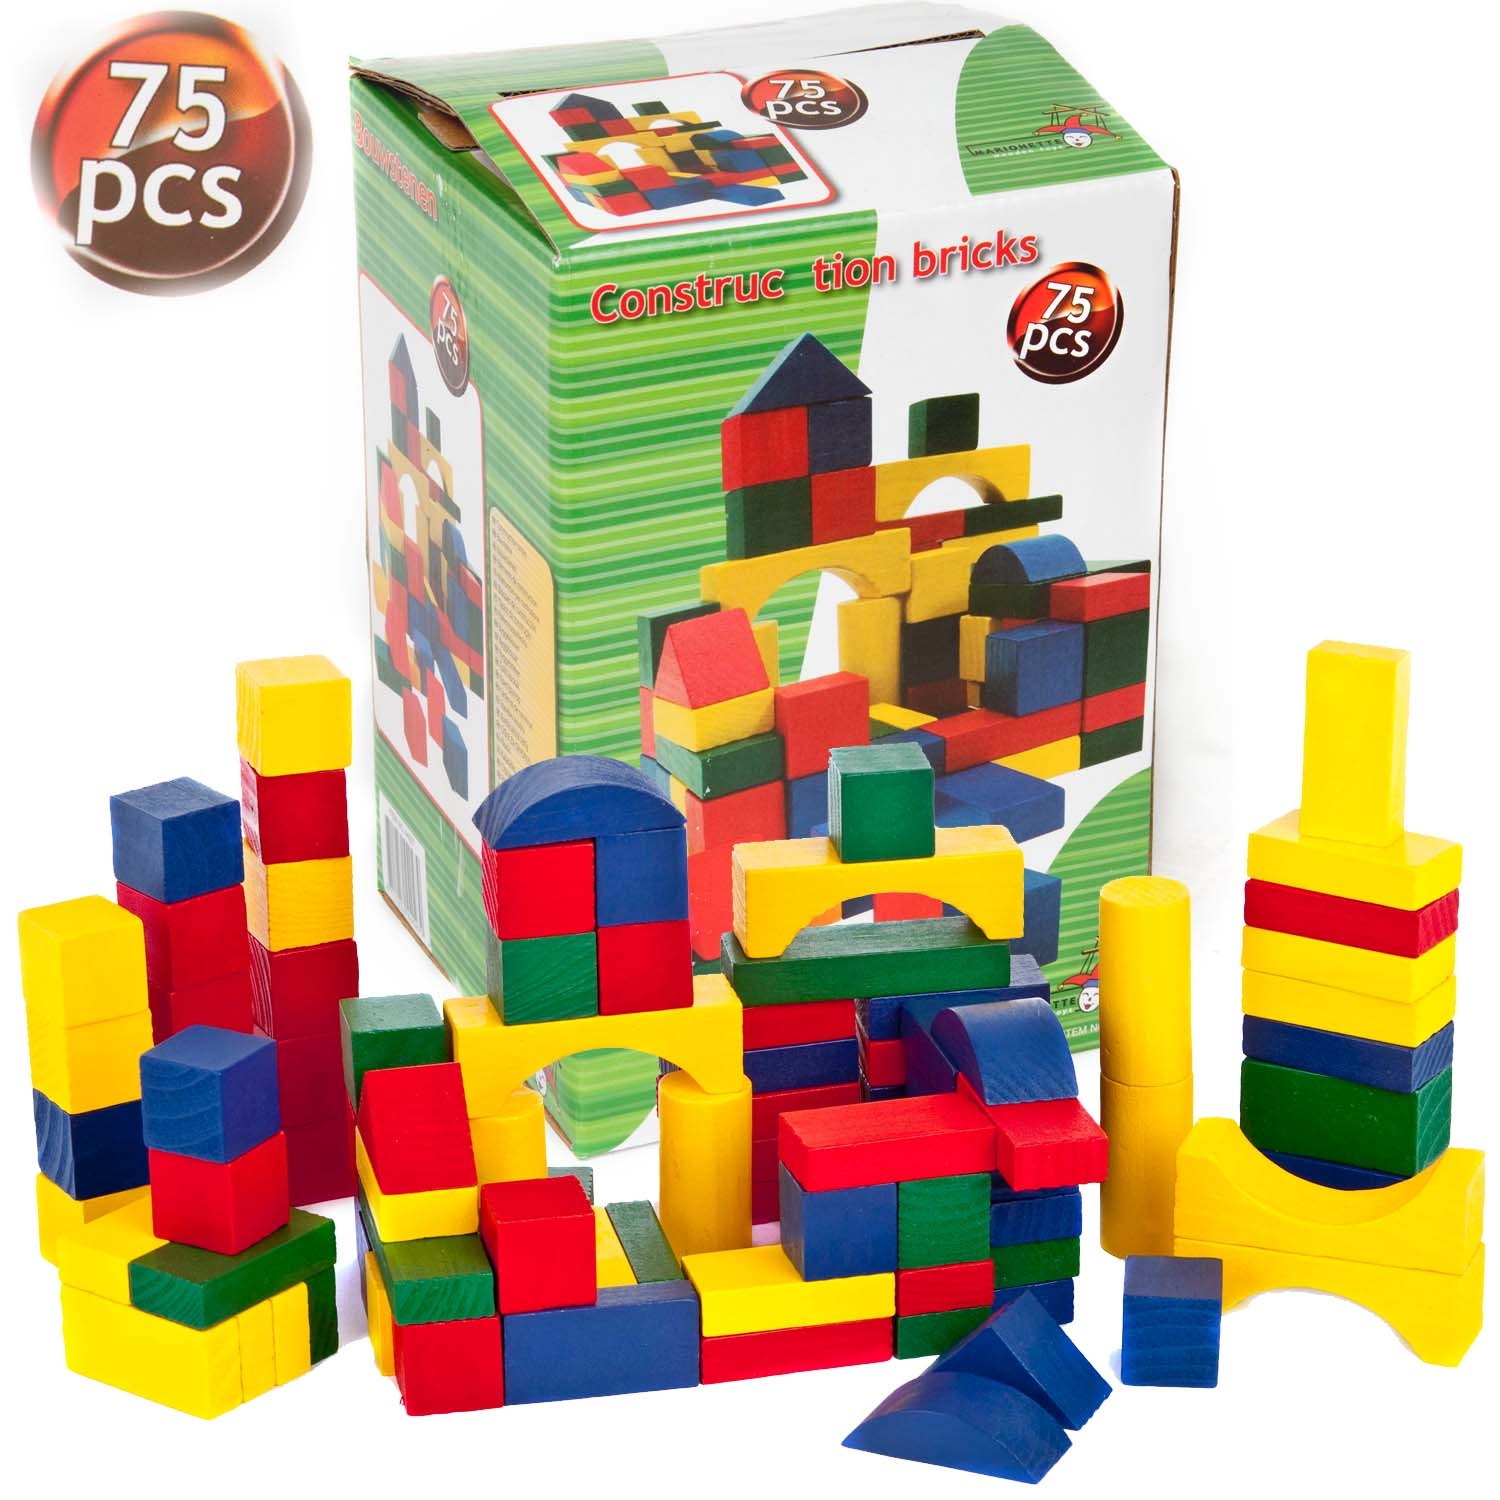 childrens wooden bricks